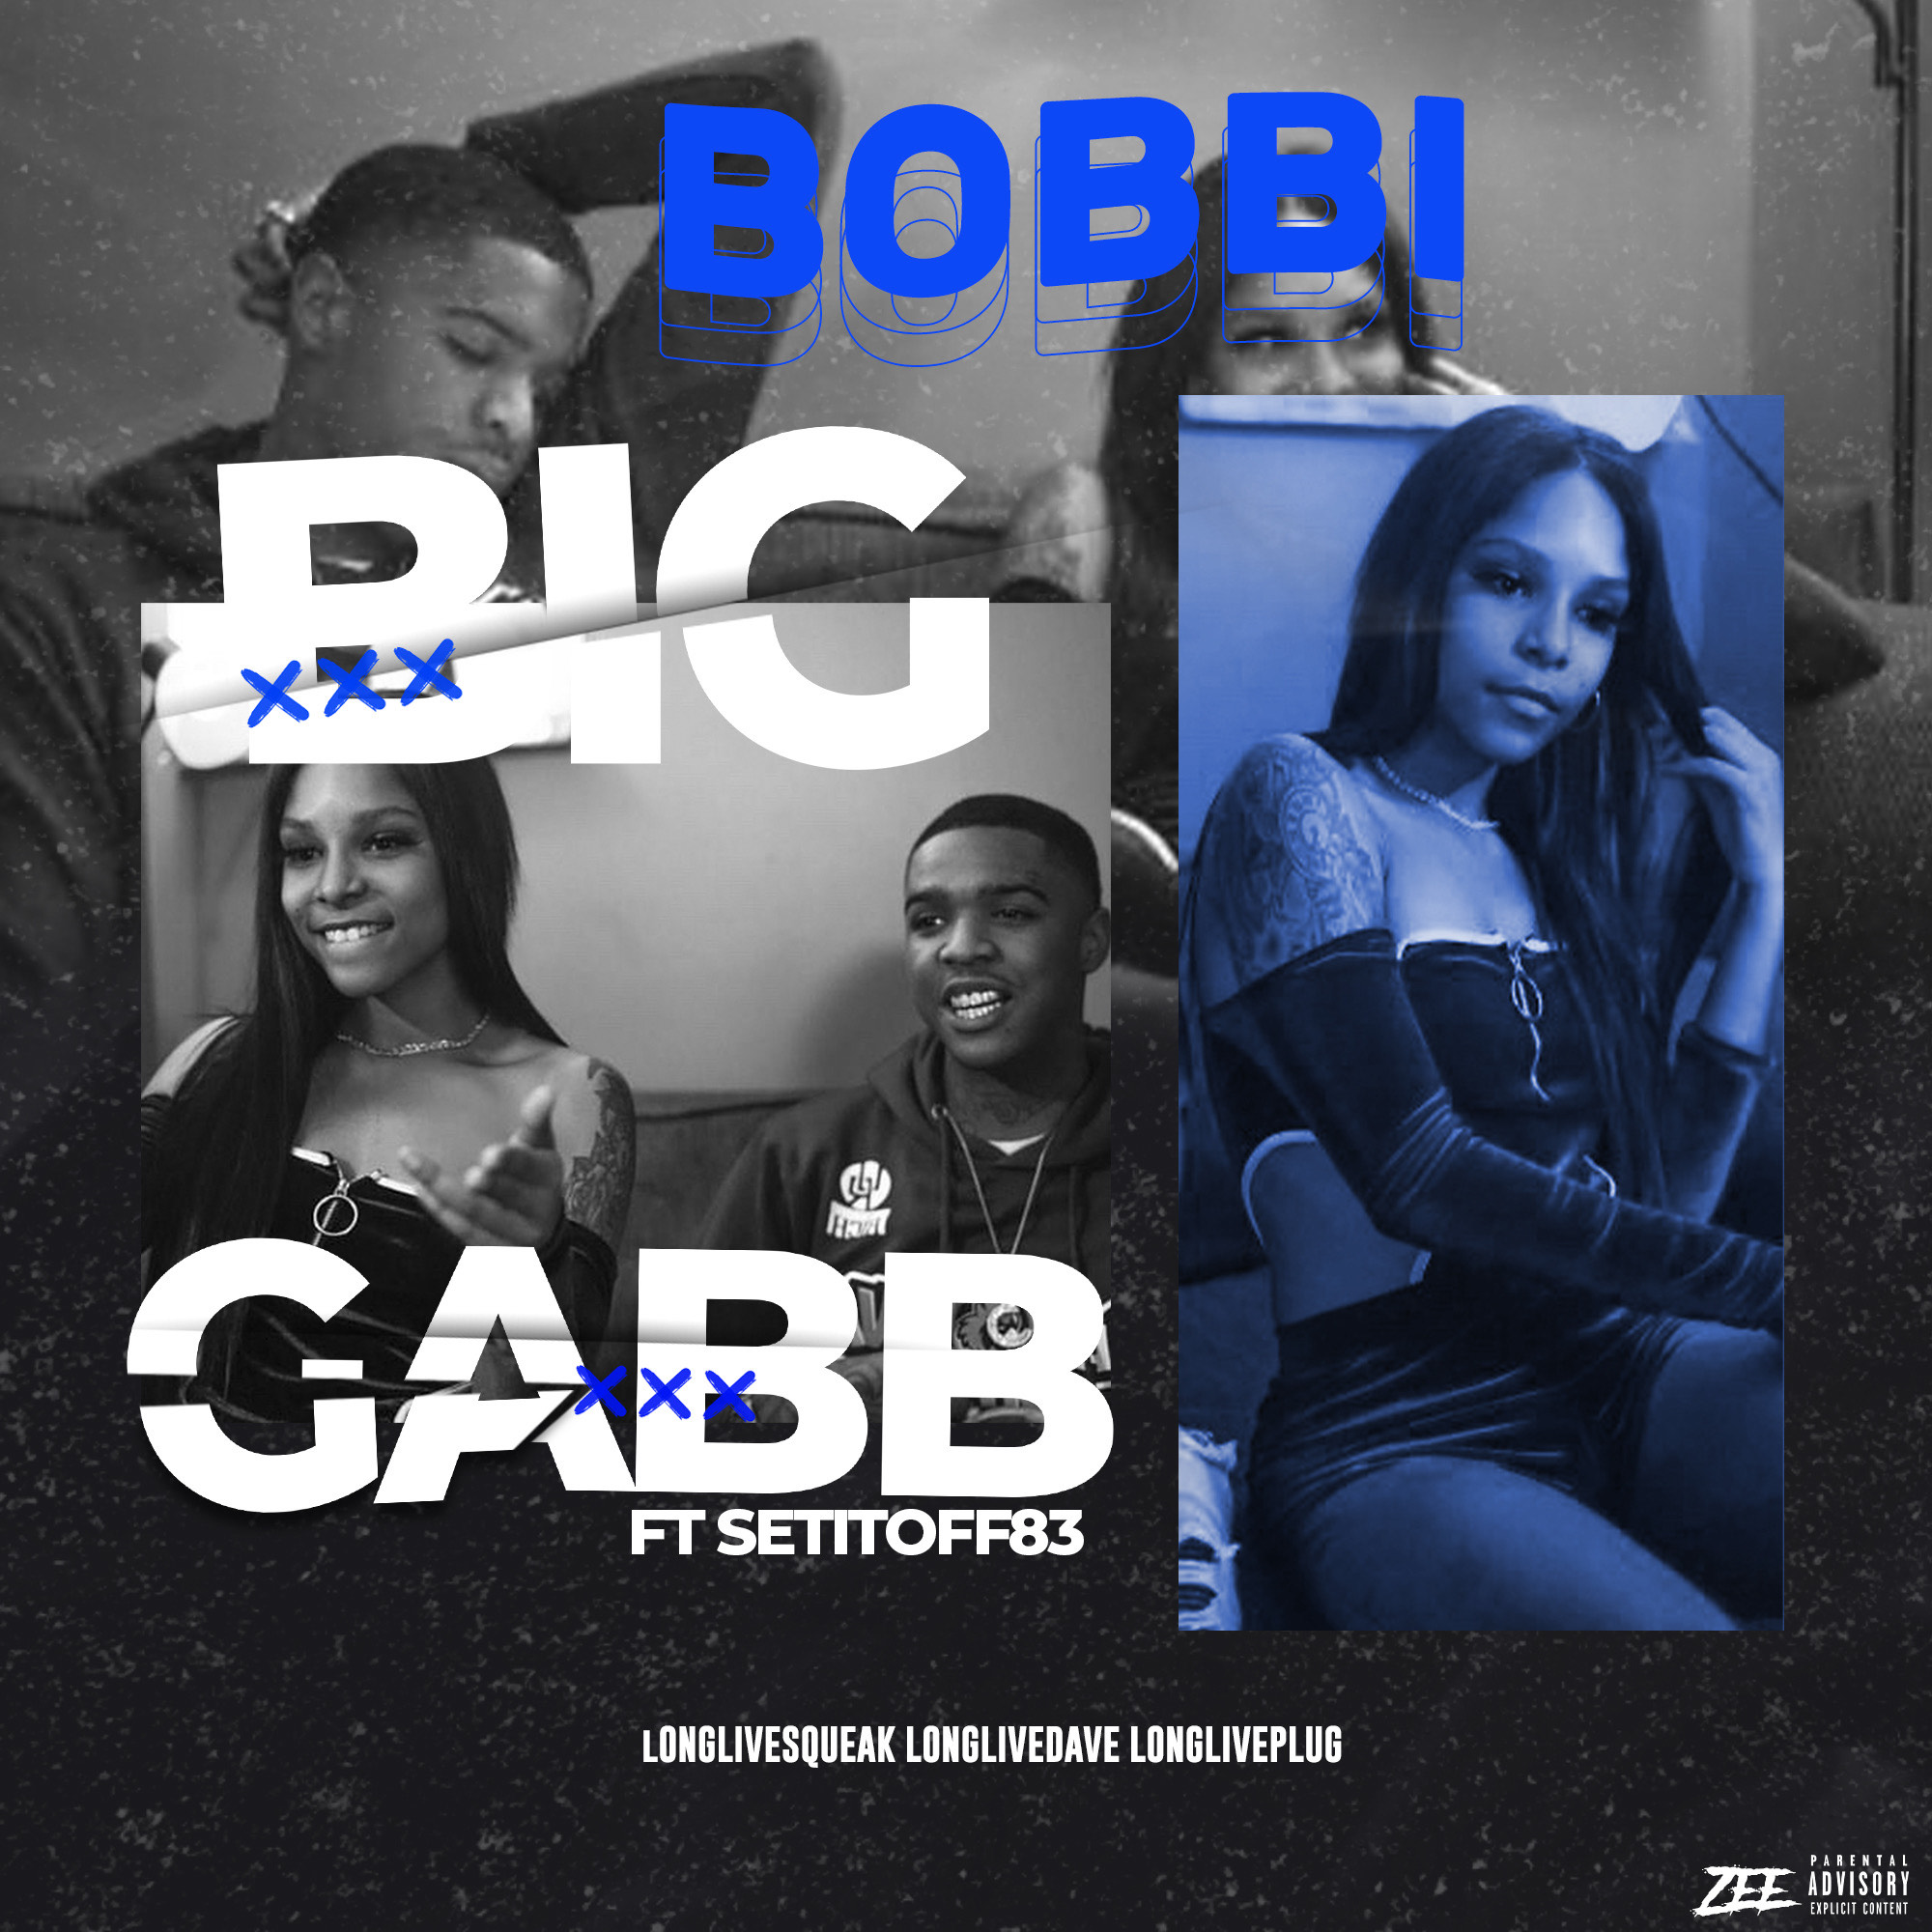 [Single] Big Gabb ft Setitoff83 – Bobbi